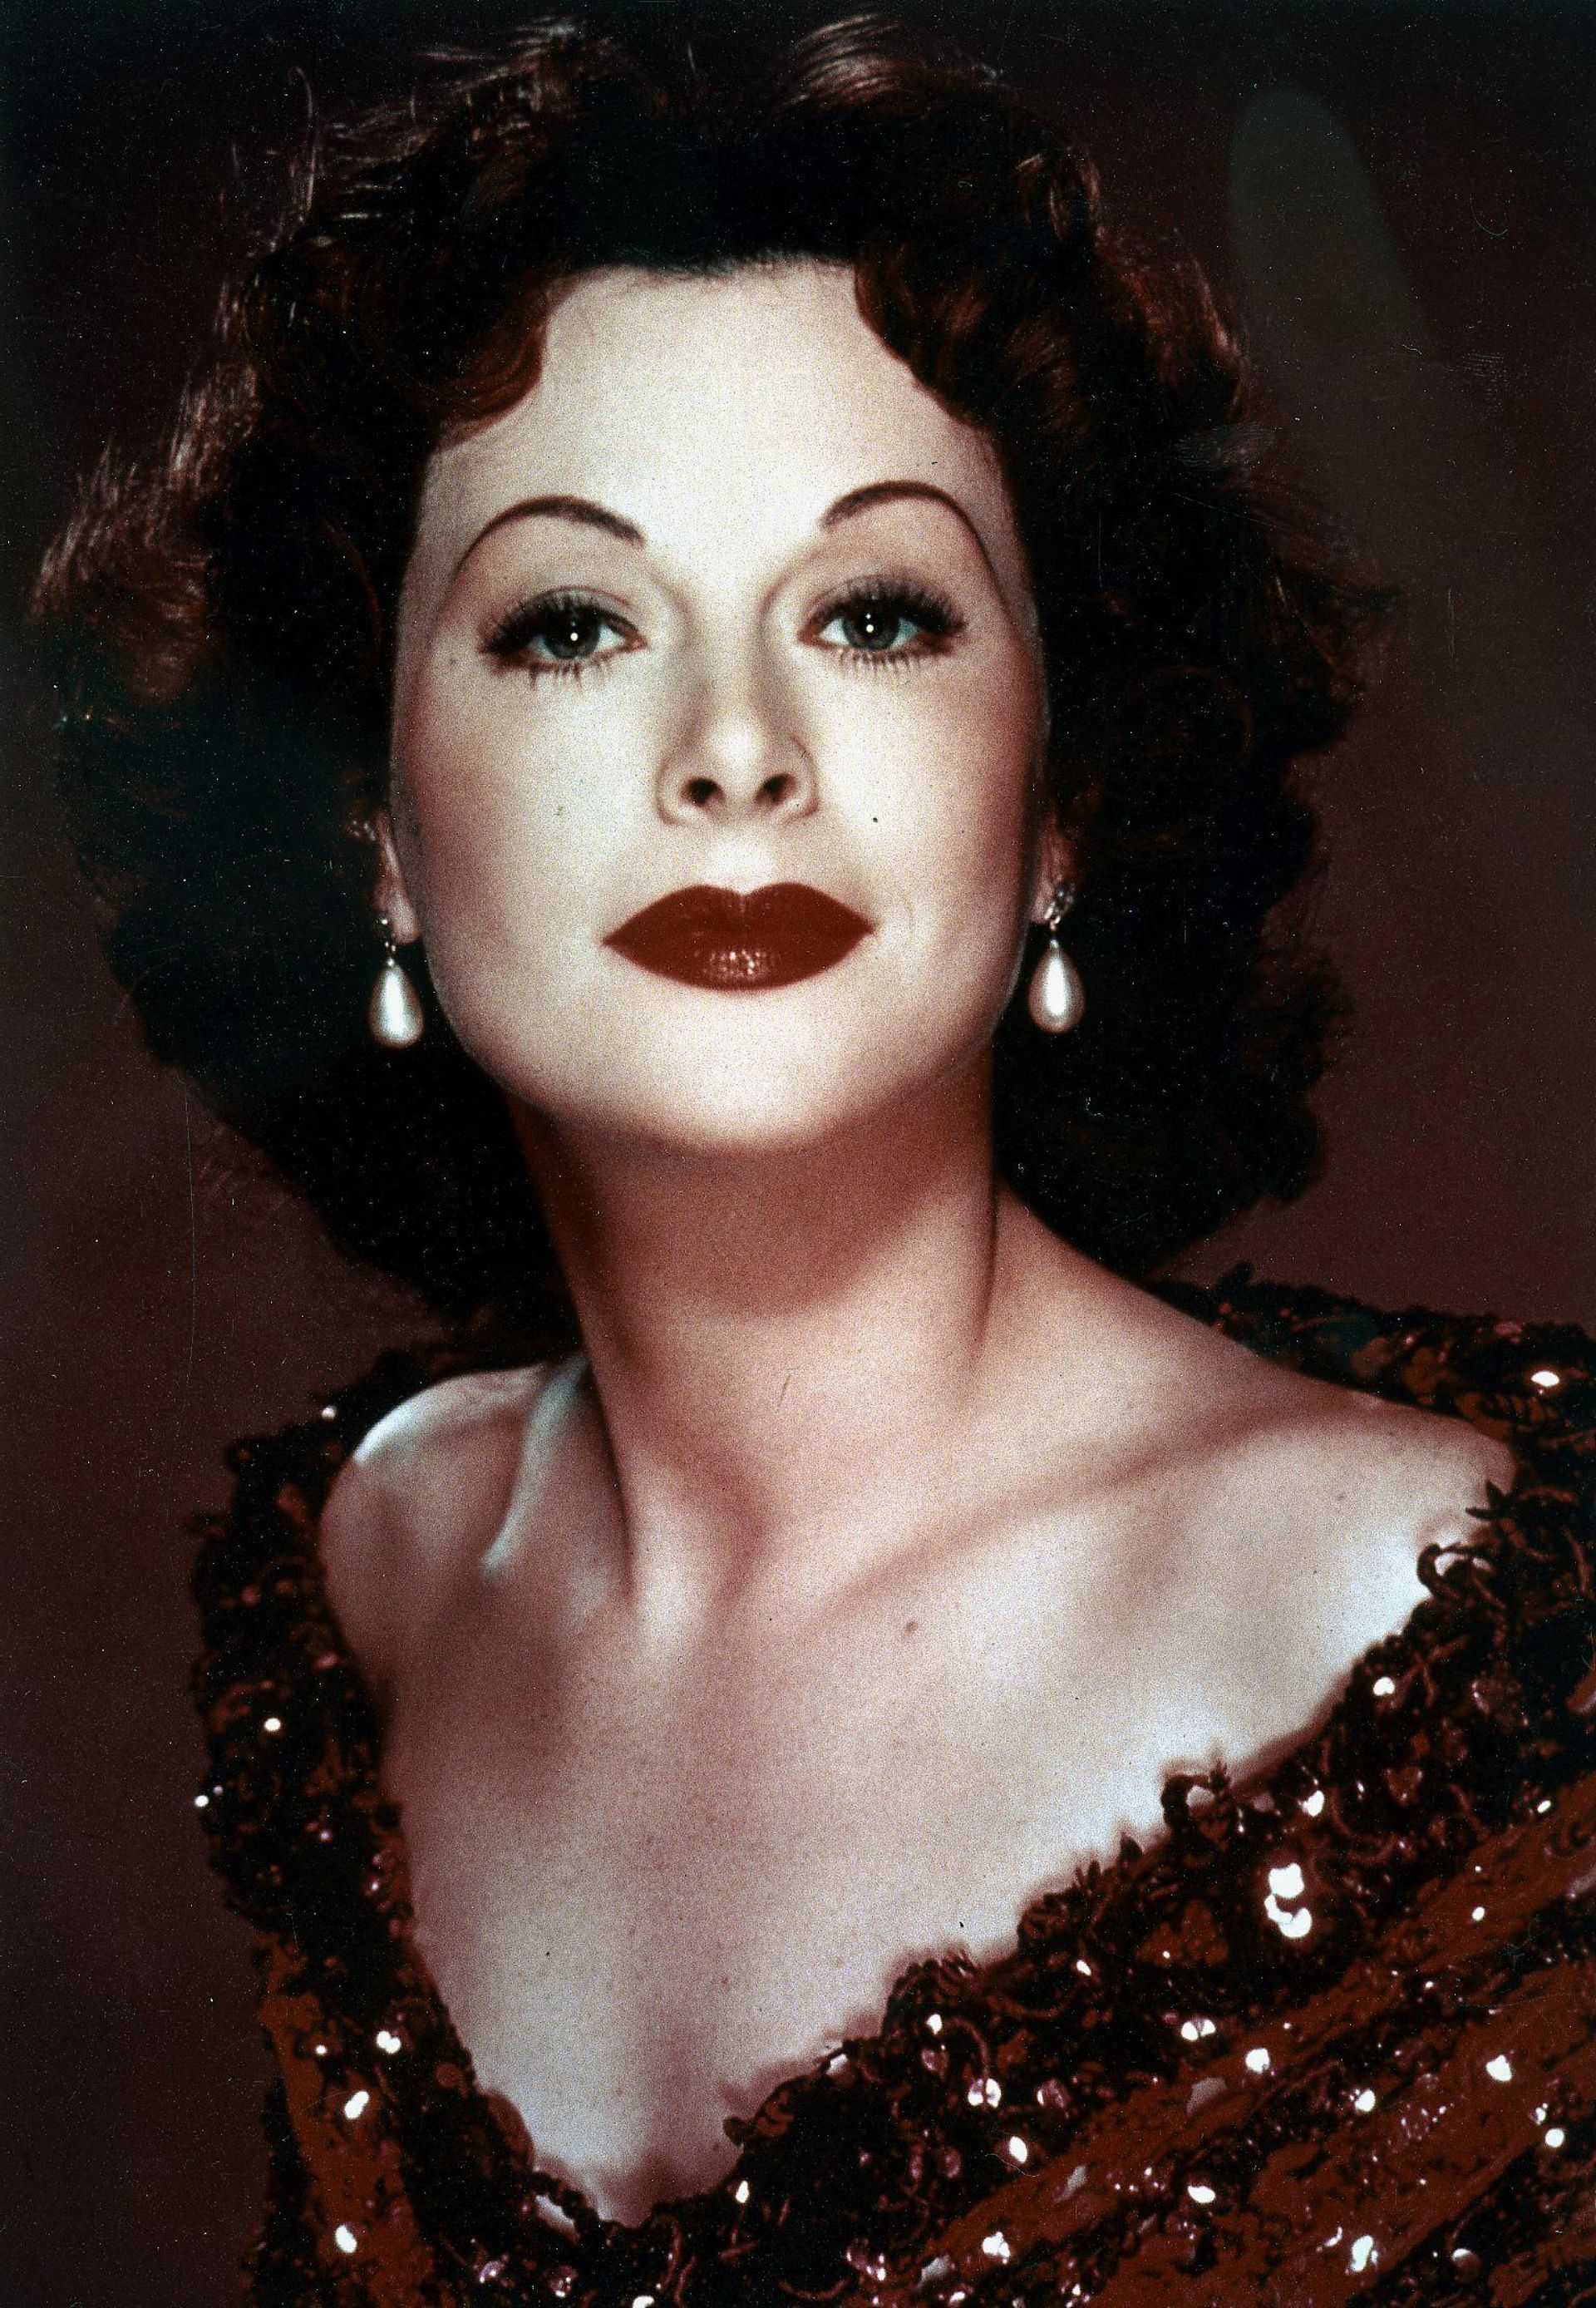 Le Wi-Fi a 20 ans, et c'est Hedy Lamarr, une actrice hollywoodienne qui l'a inventé